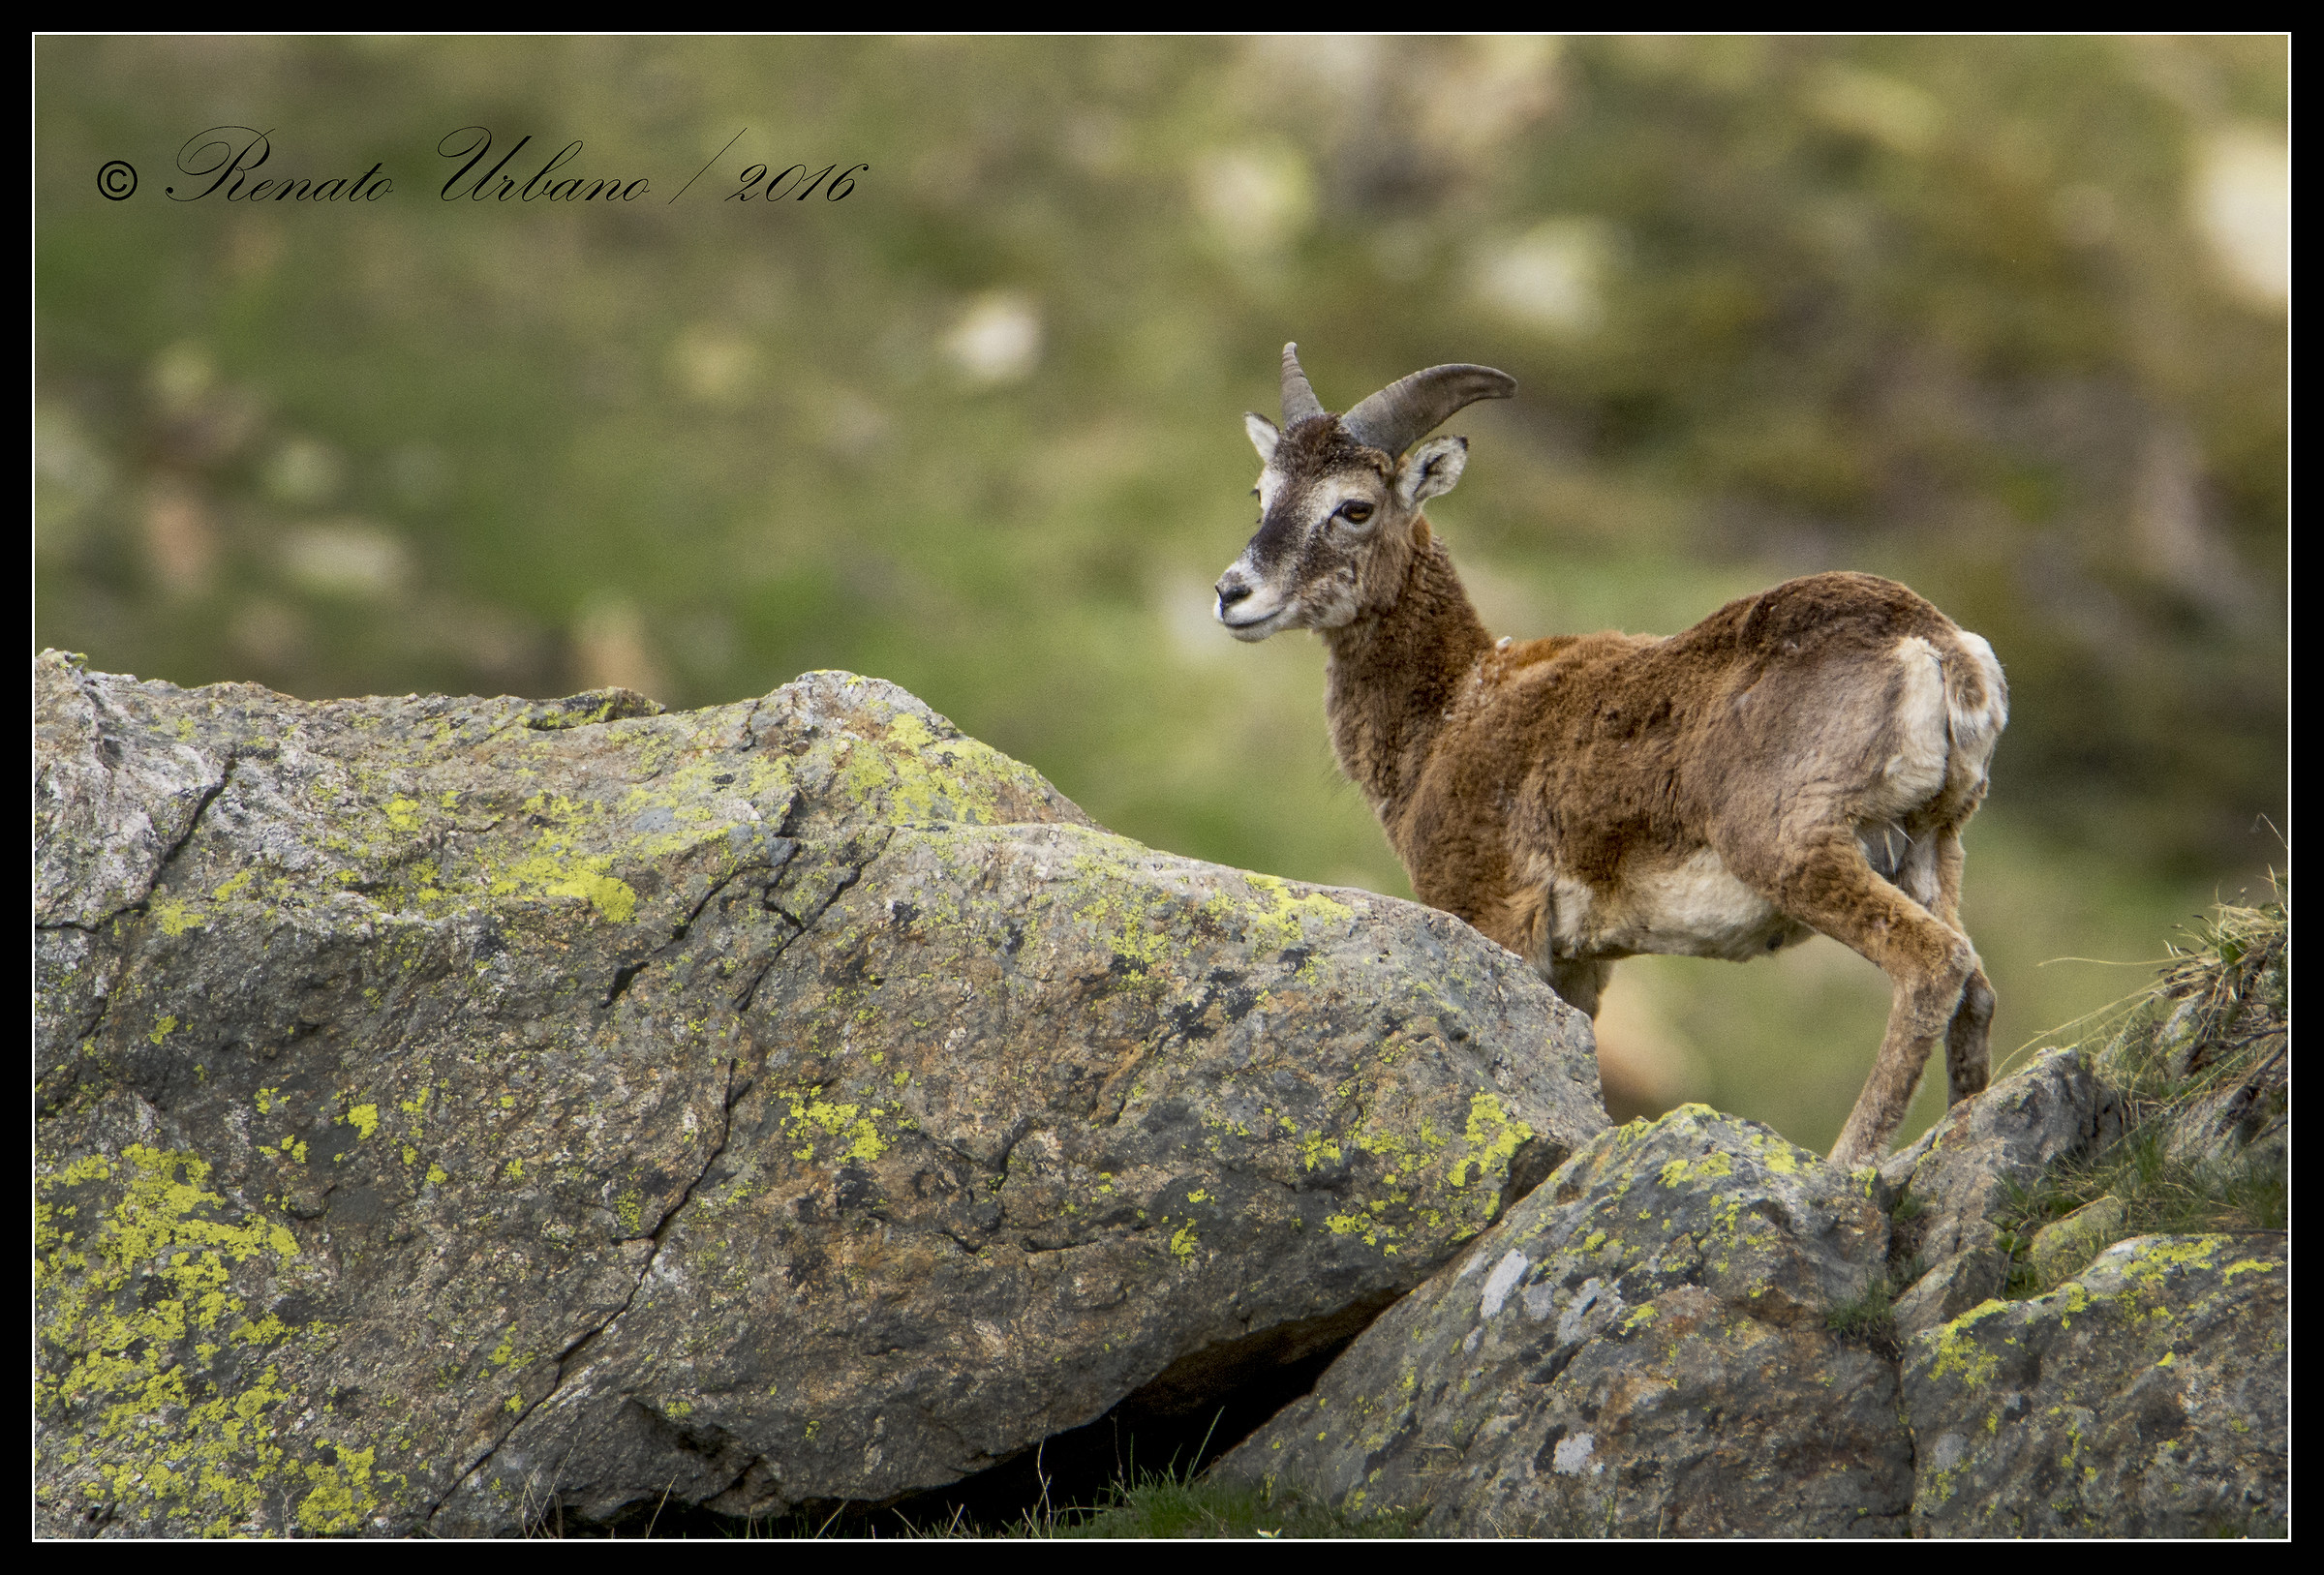 Meeting between the rocks - mouflon...